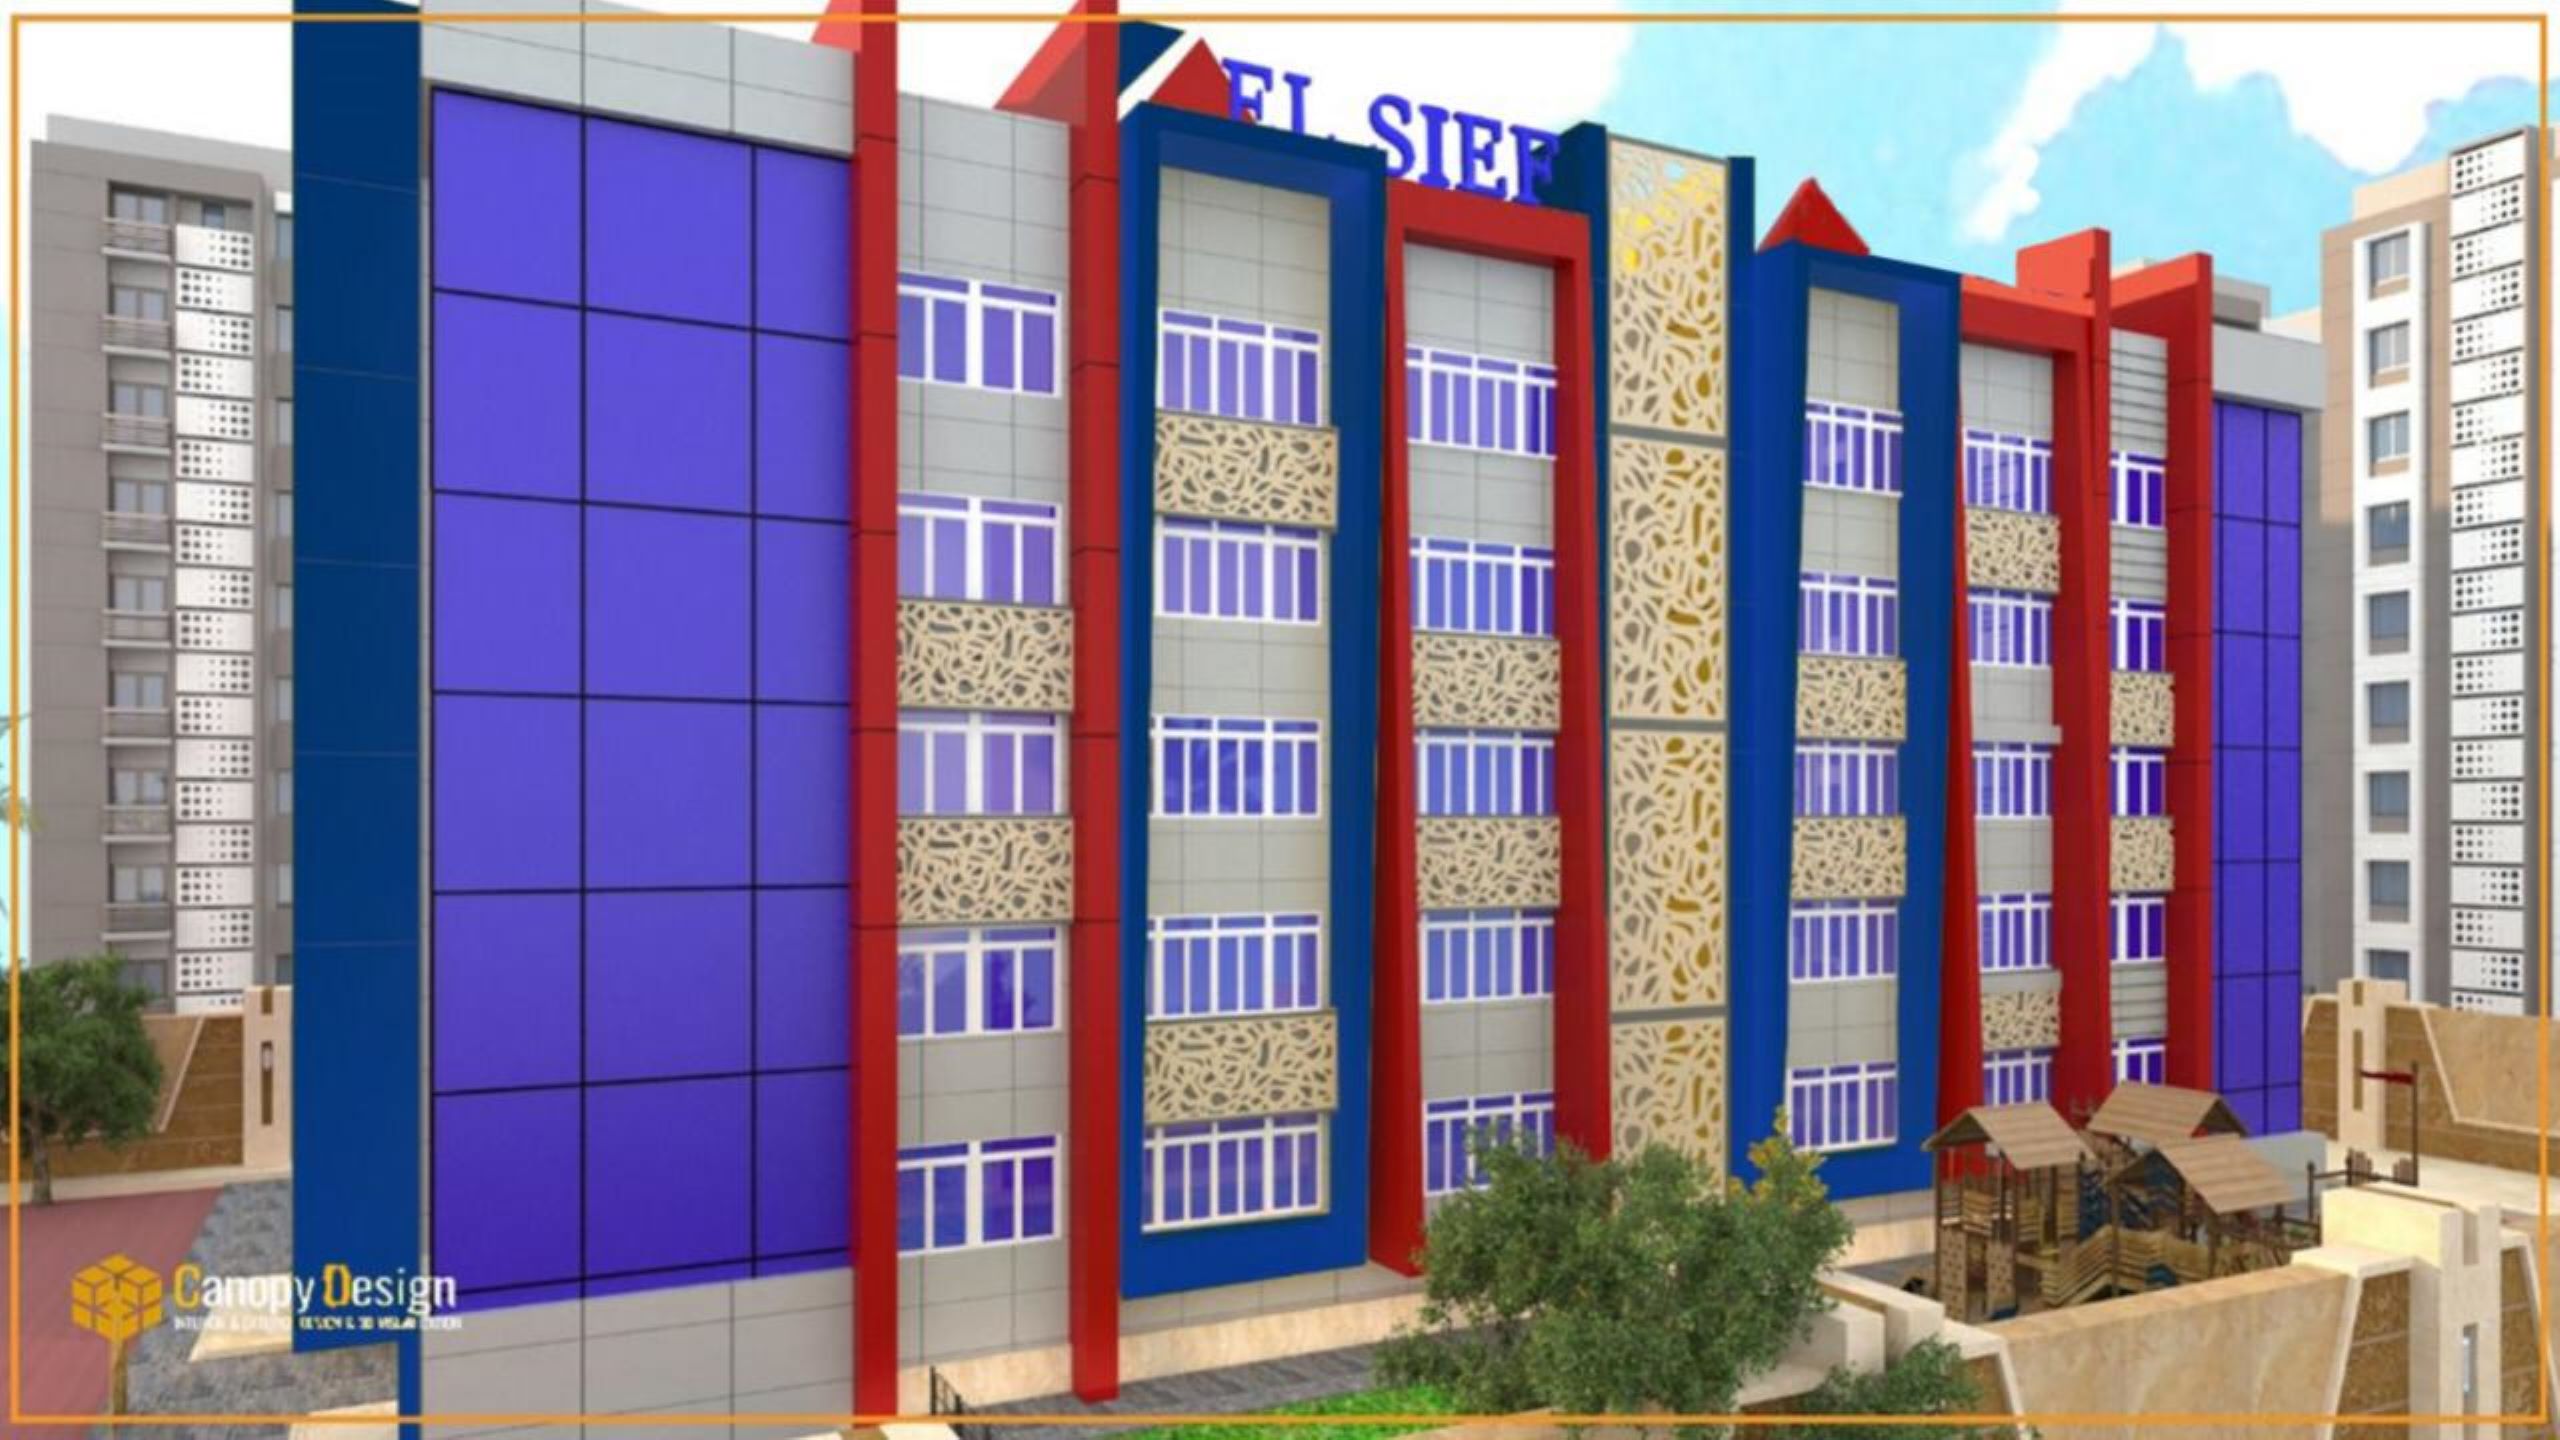 El-Seif Modern School